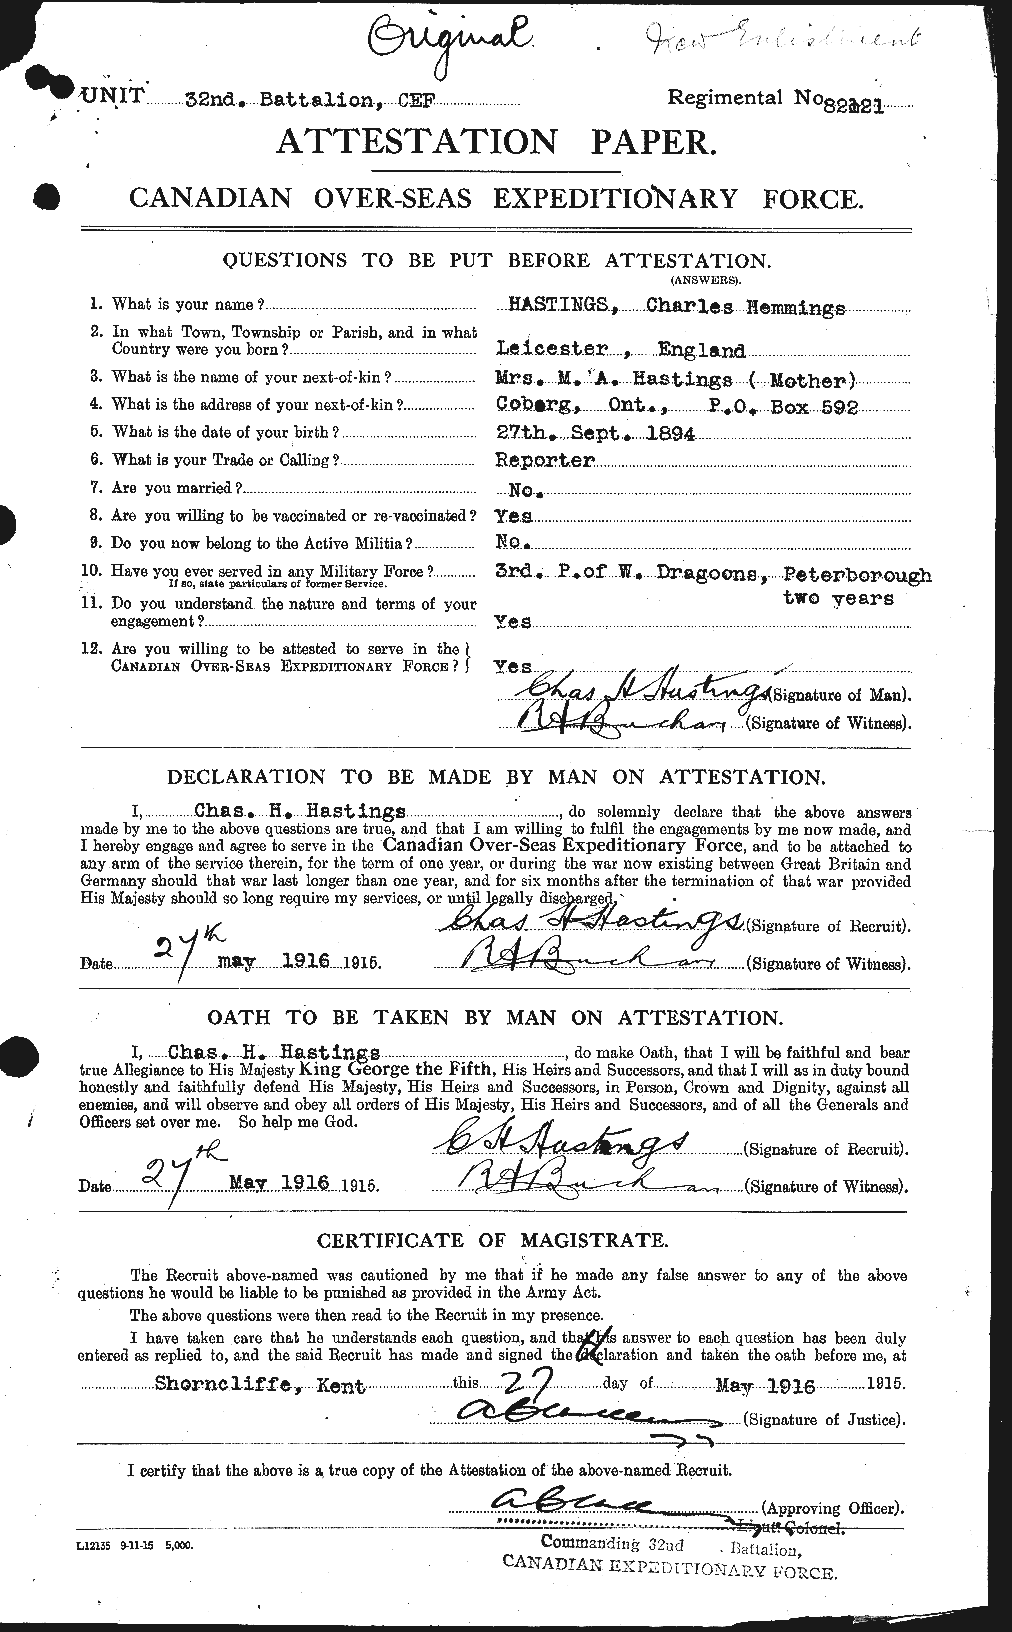 Dossiers du Personnel de la Première Guerre mondiale - CEC 387055a